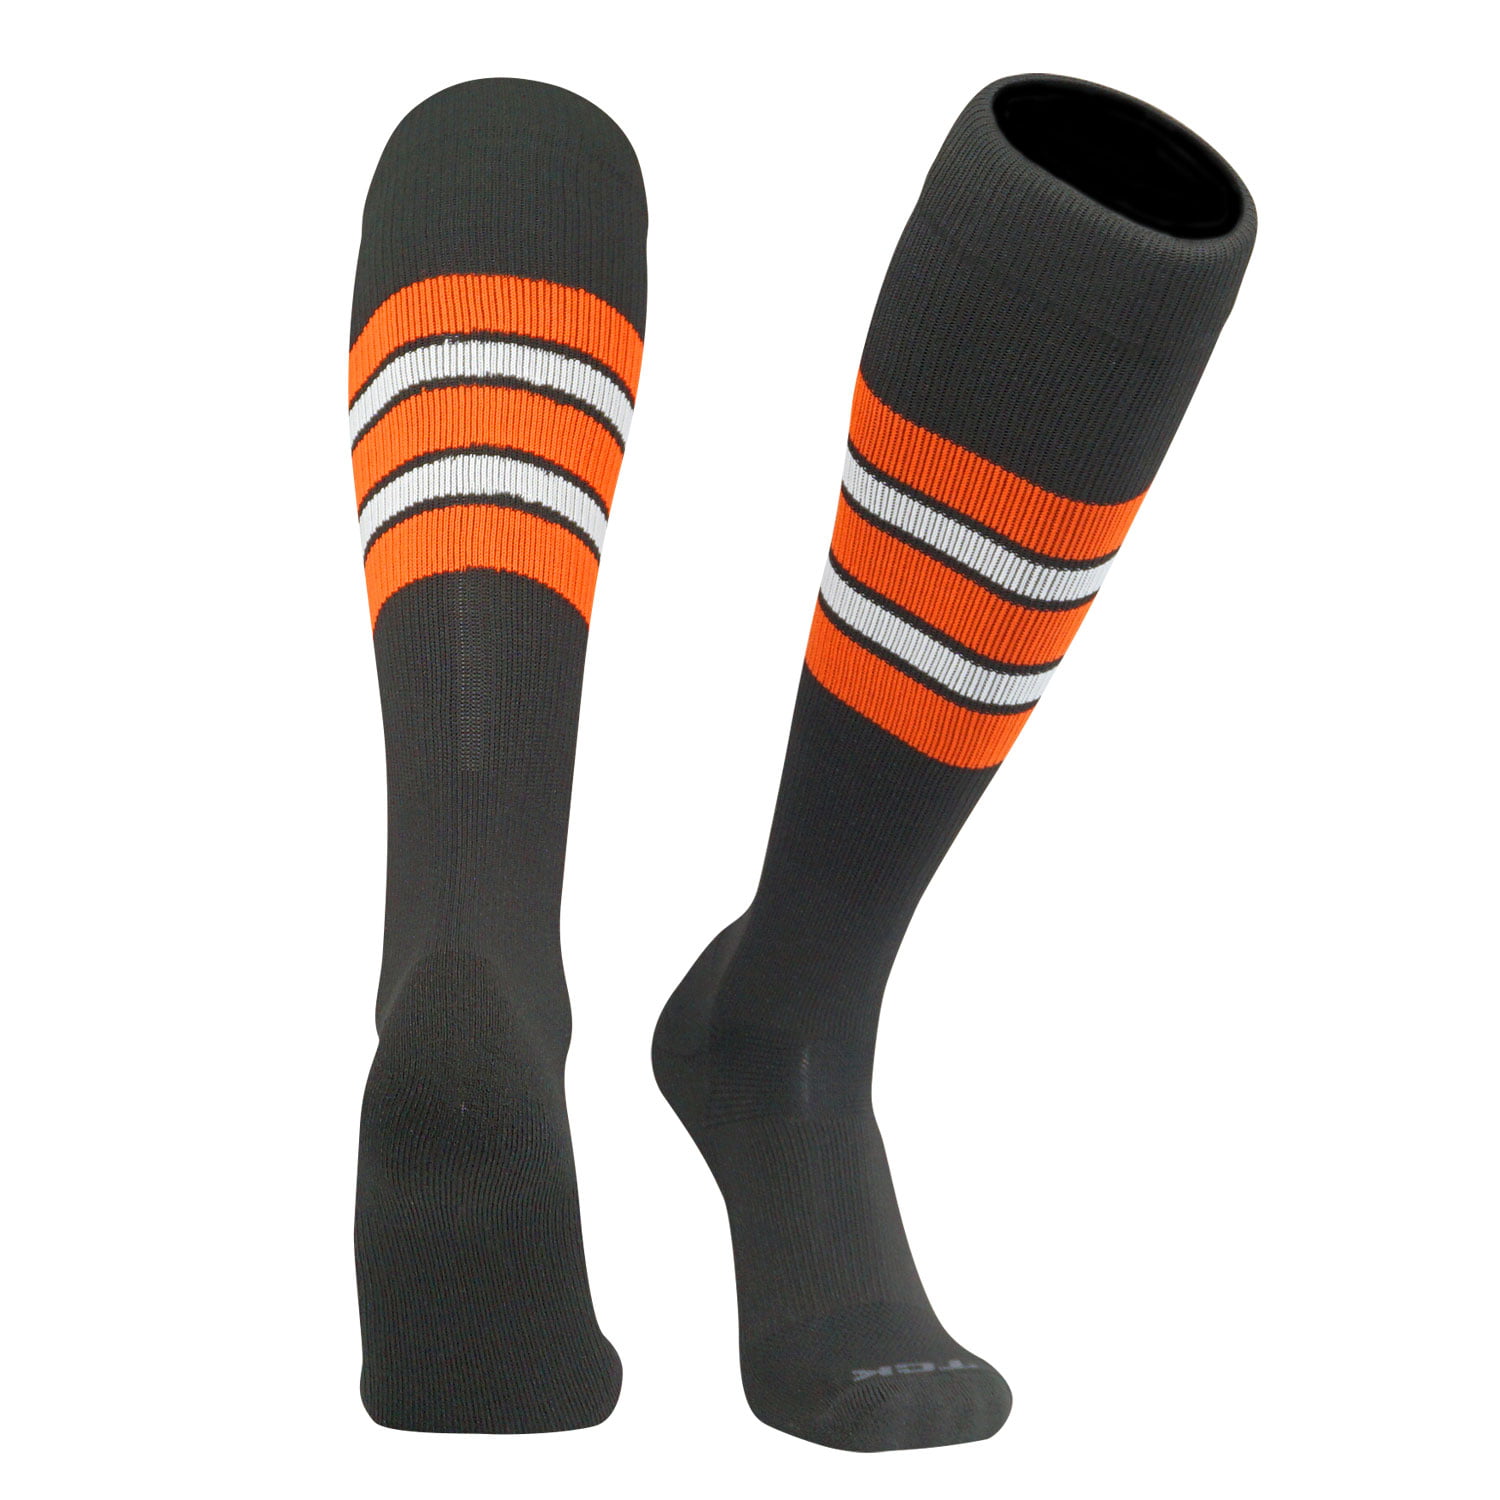 TCK Elite Baseball Football Knee High Striped Socks Orange E Black White 